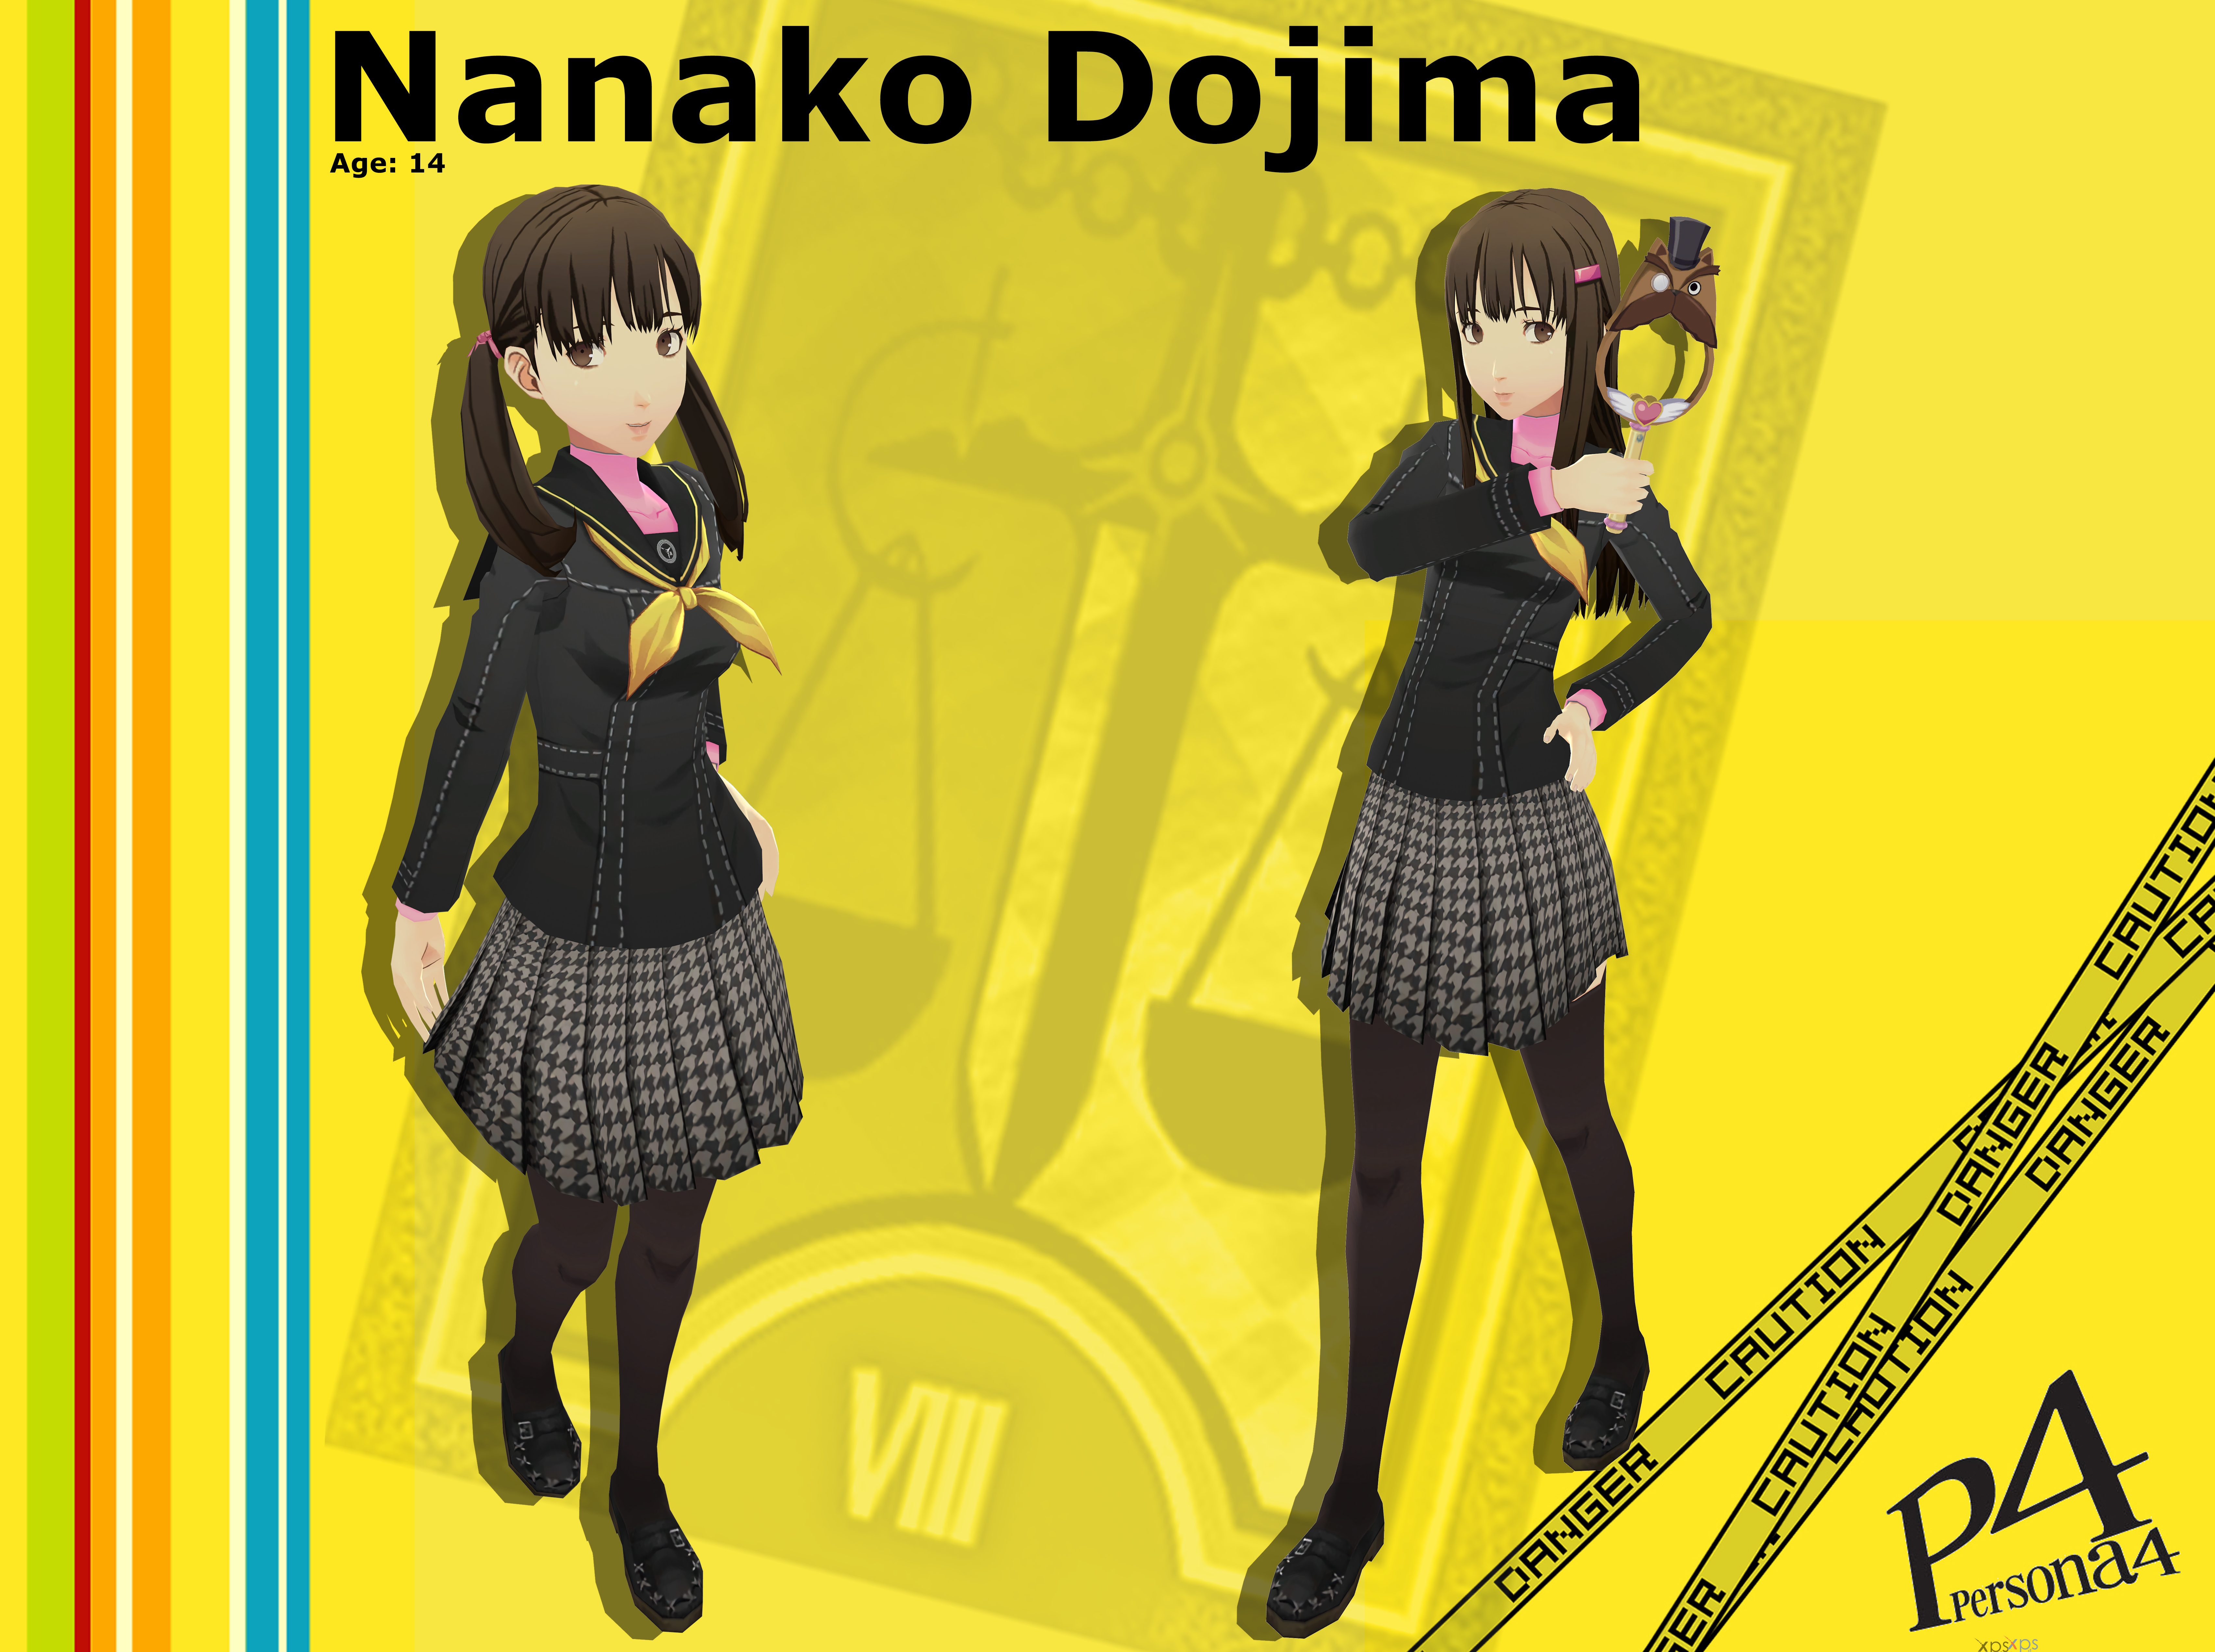 Nanako persona 4